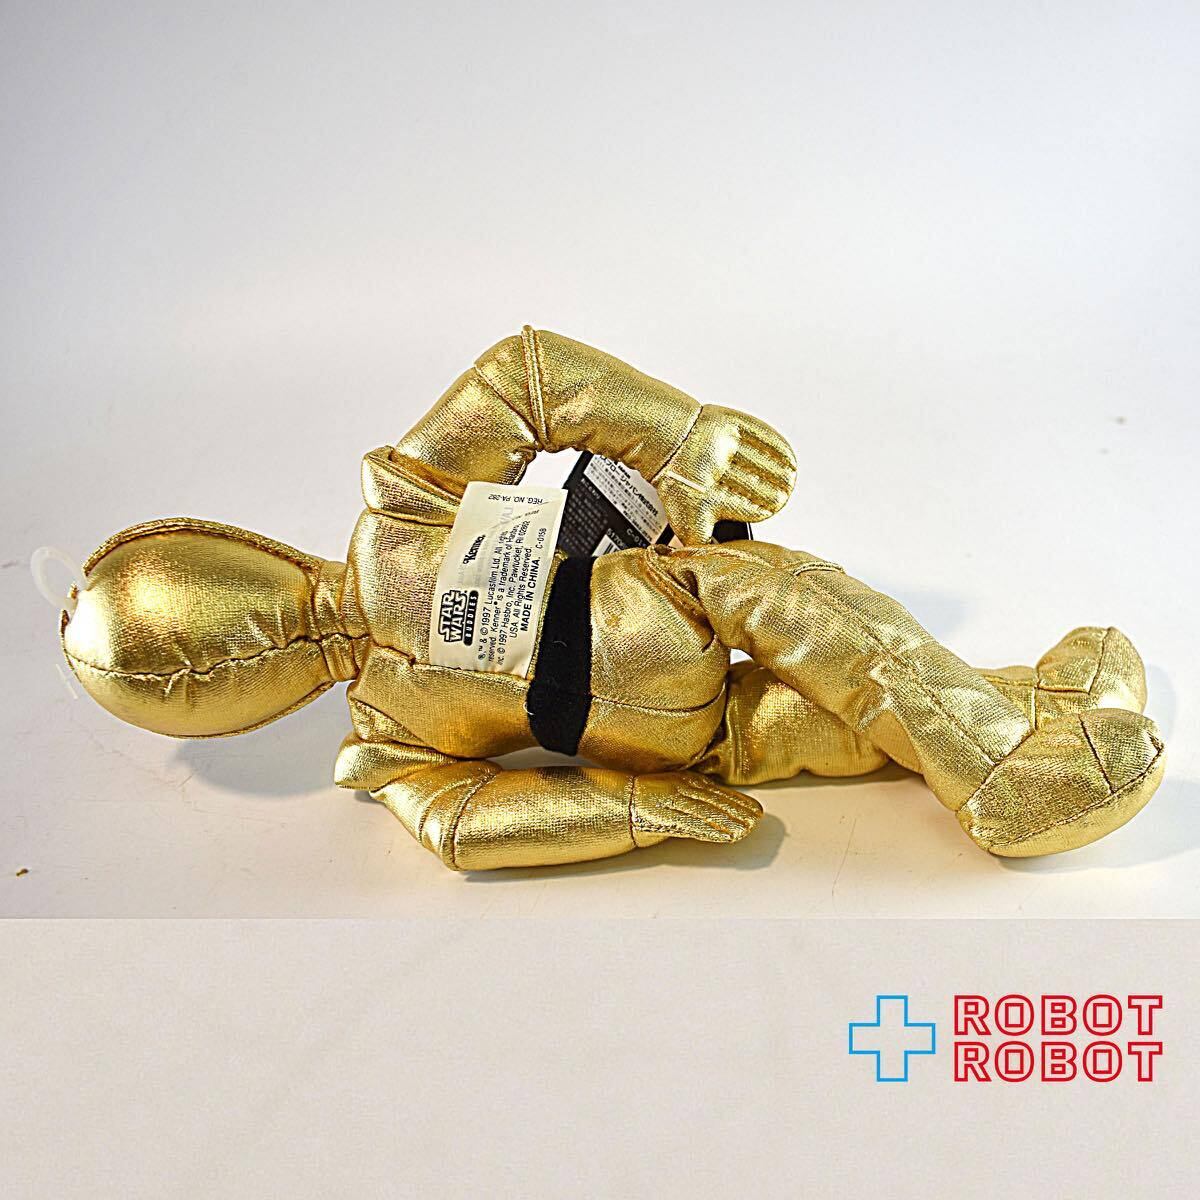 スター・ウォーズ バディーズ C-3PO ビーニーぬいぐるみ人形